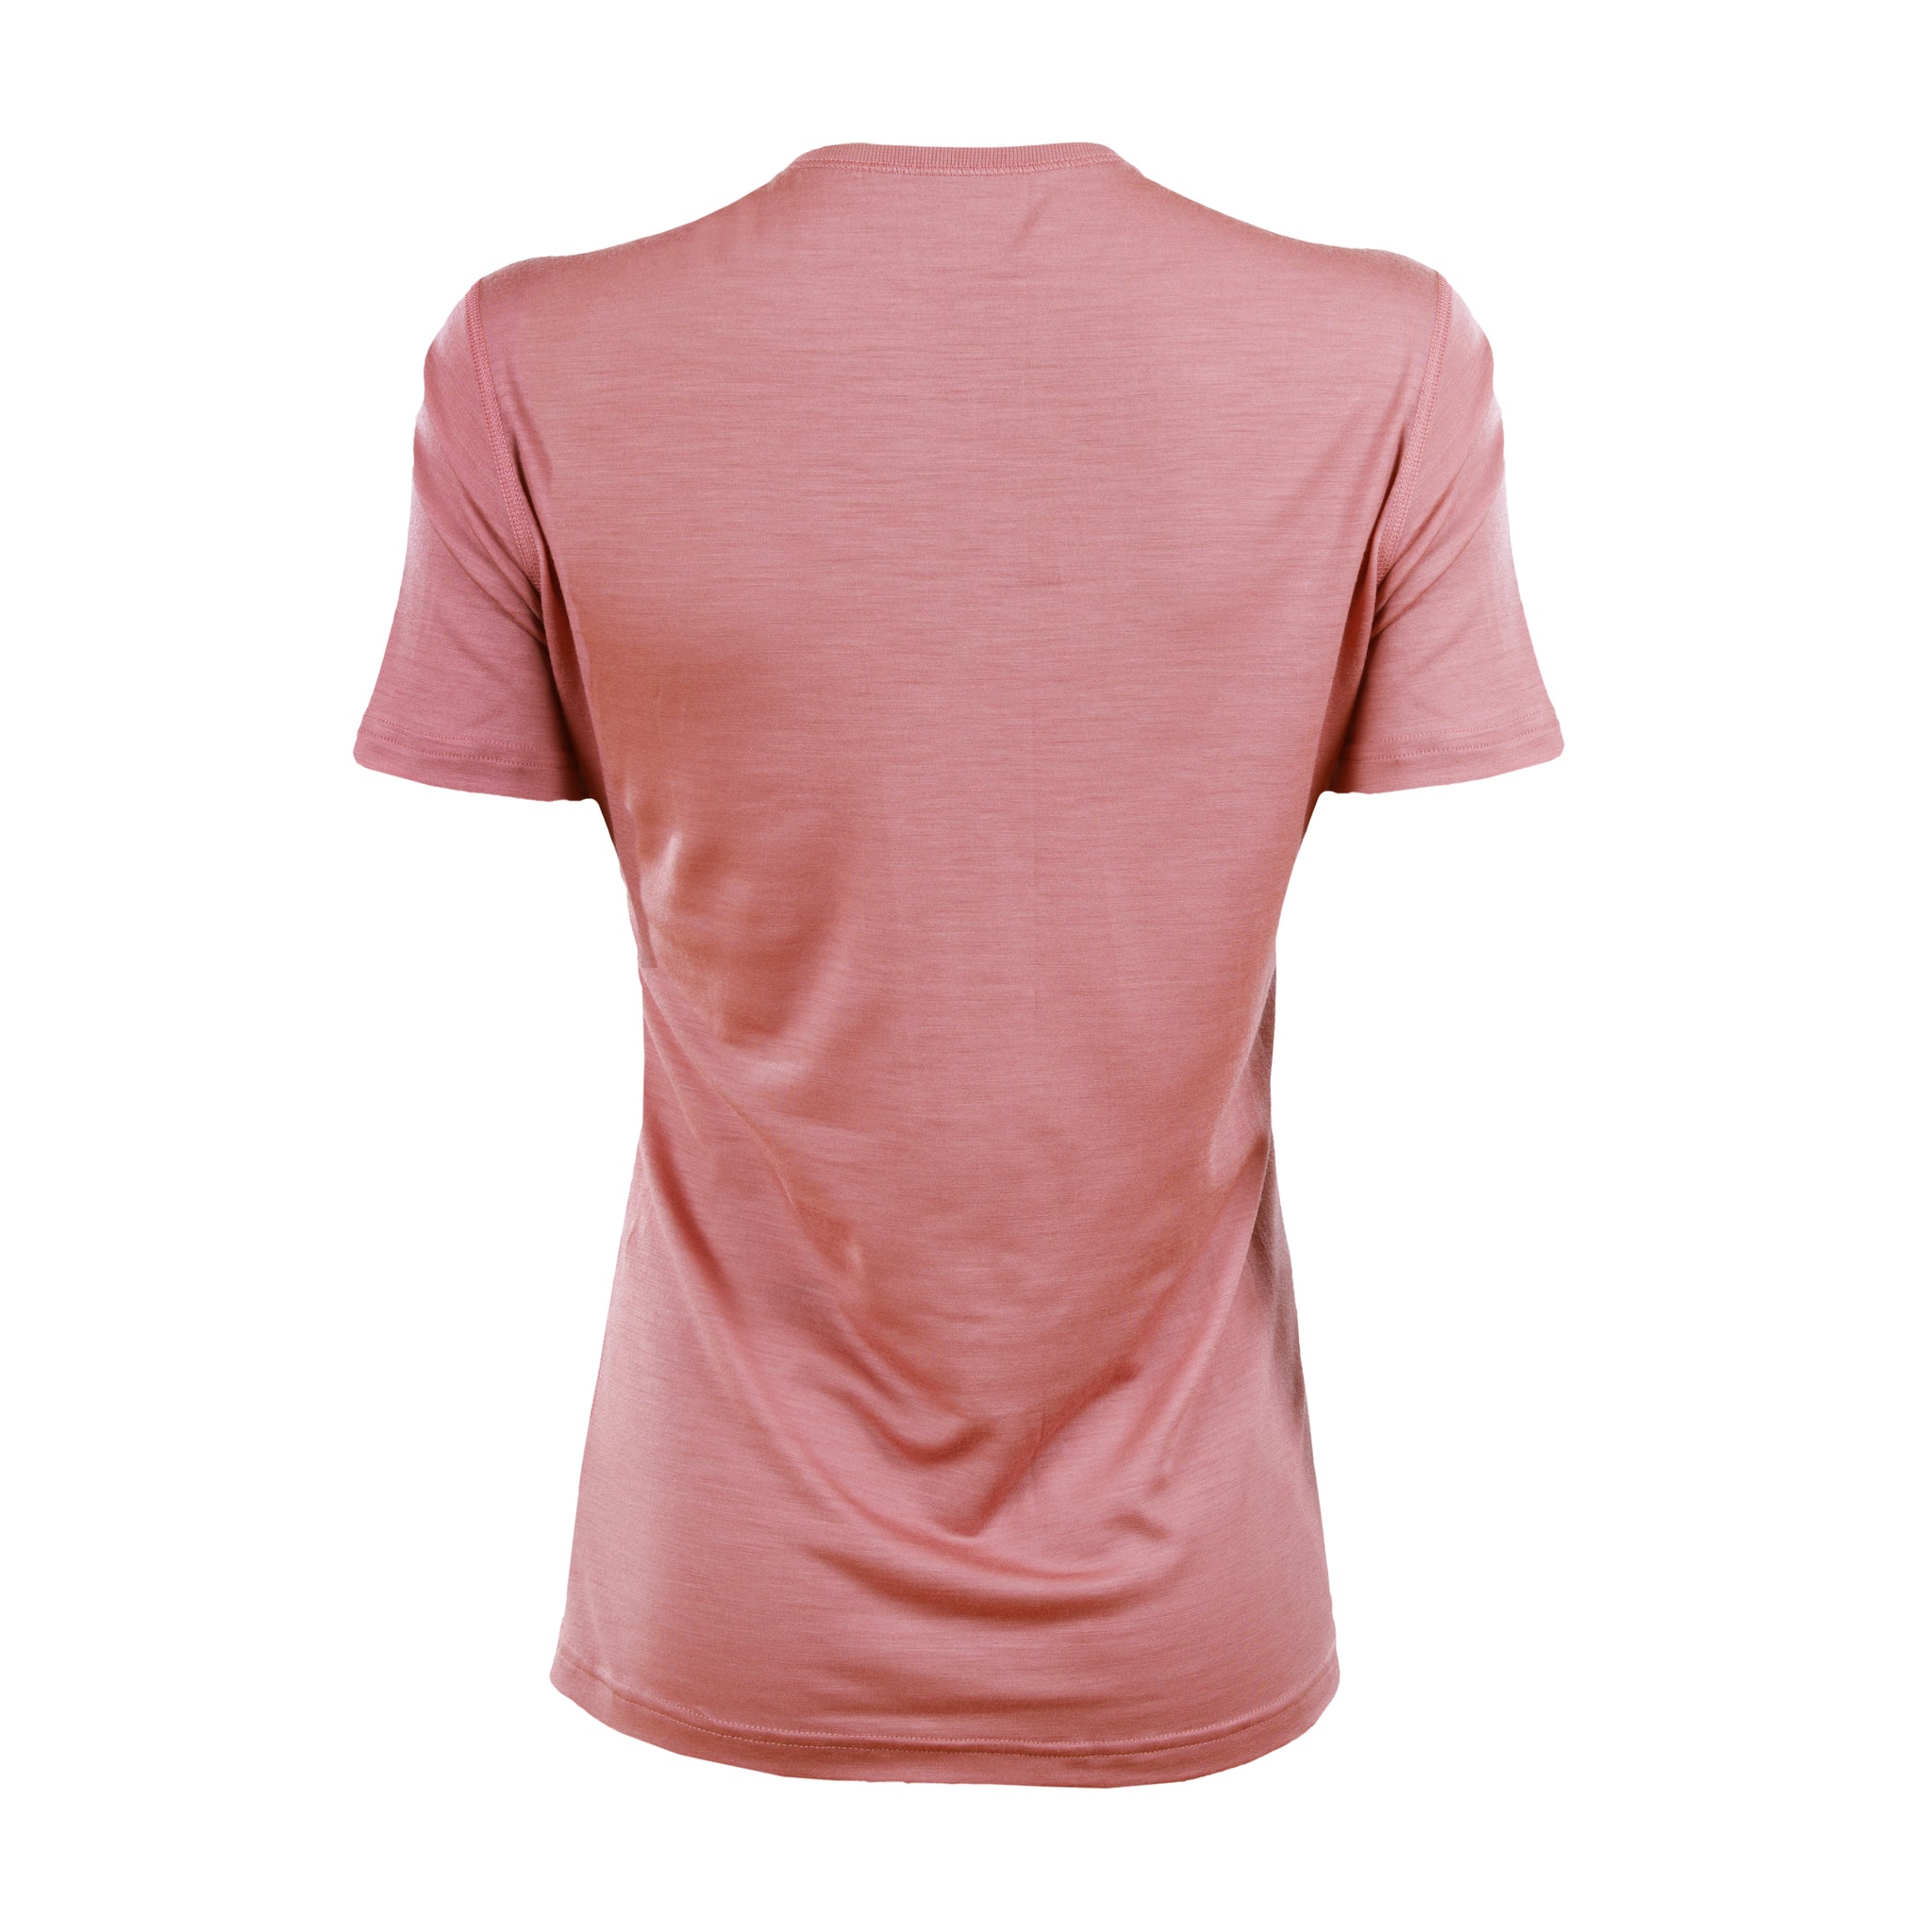 Janus t-skjorte i light merinoull til dame, farge korall, baksidebilde